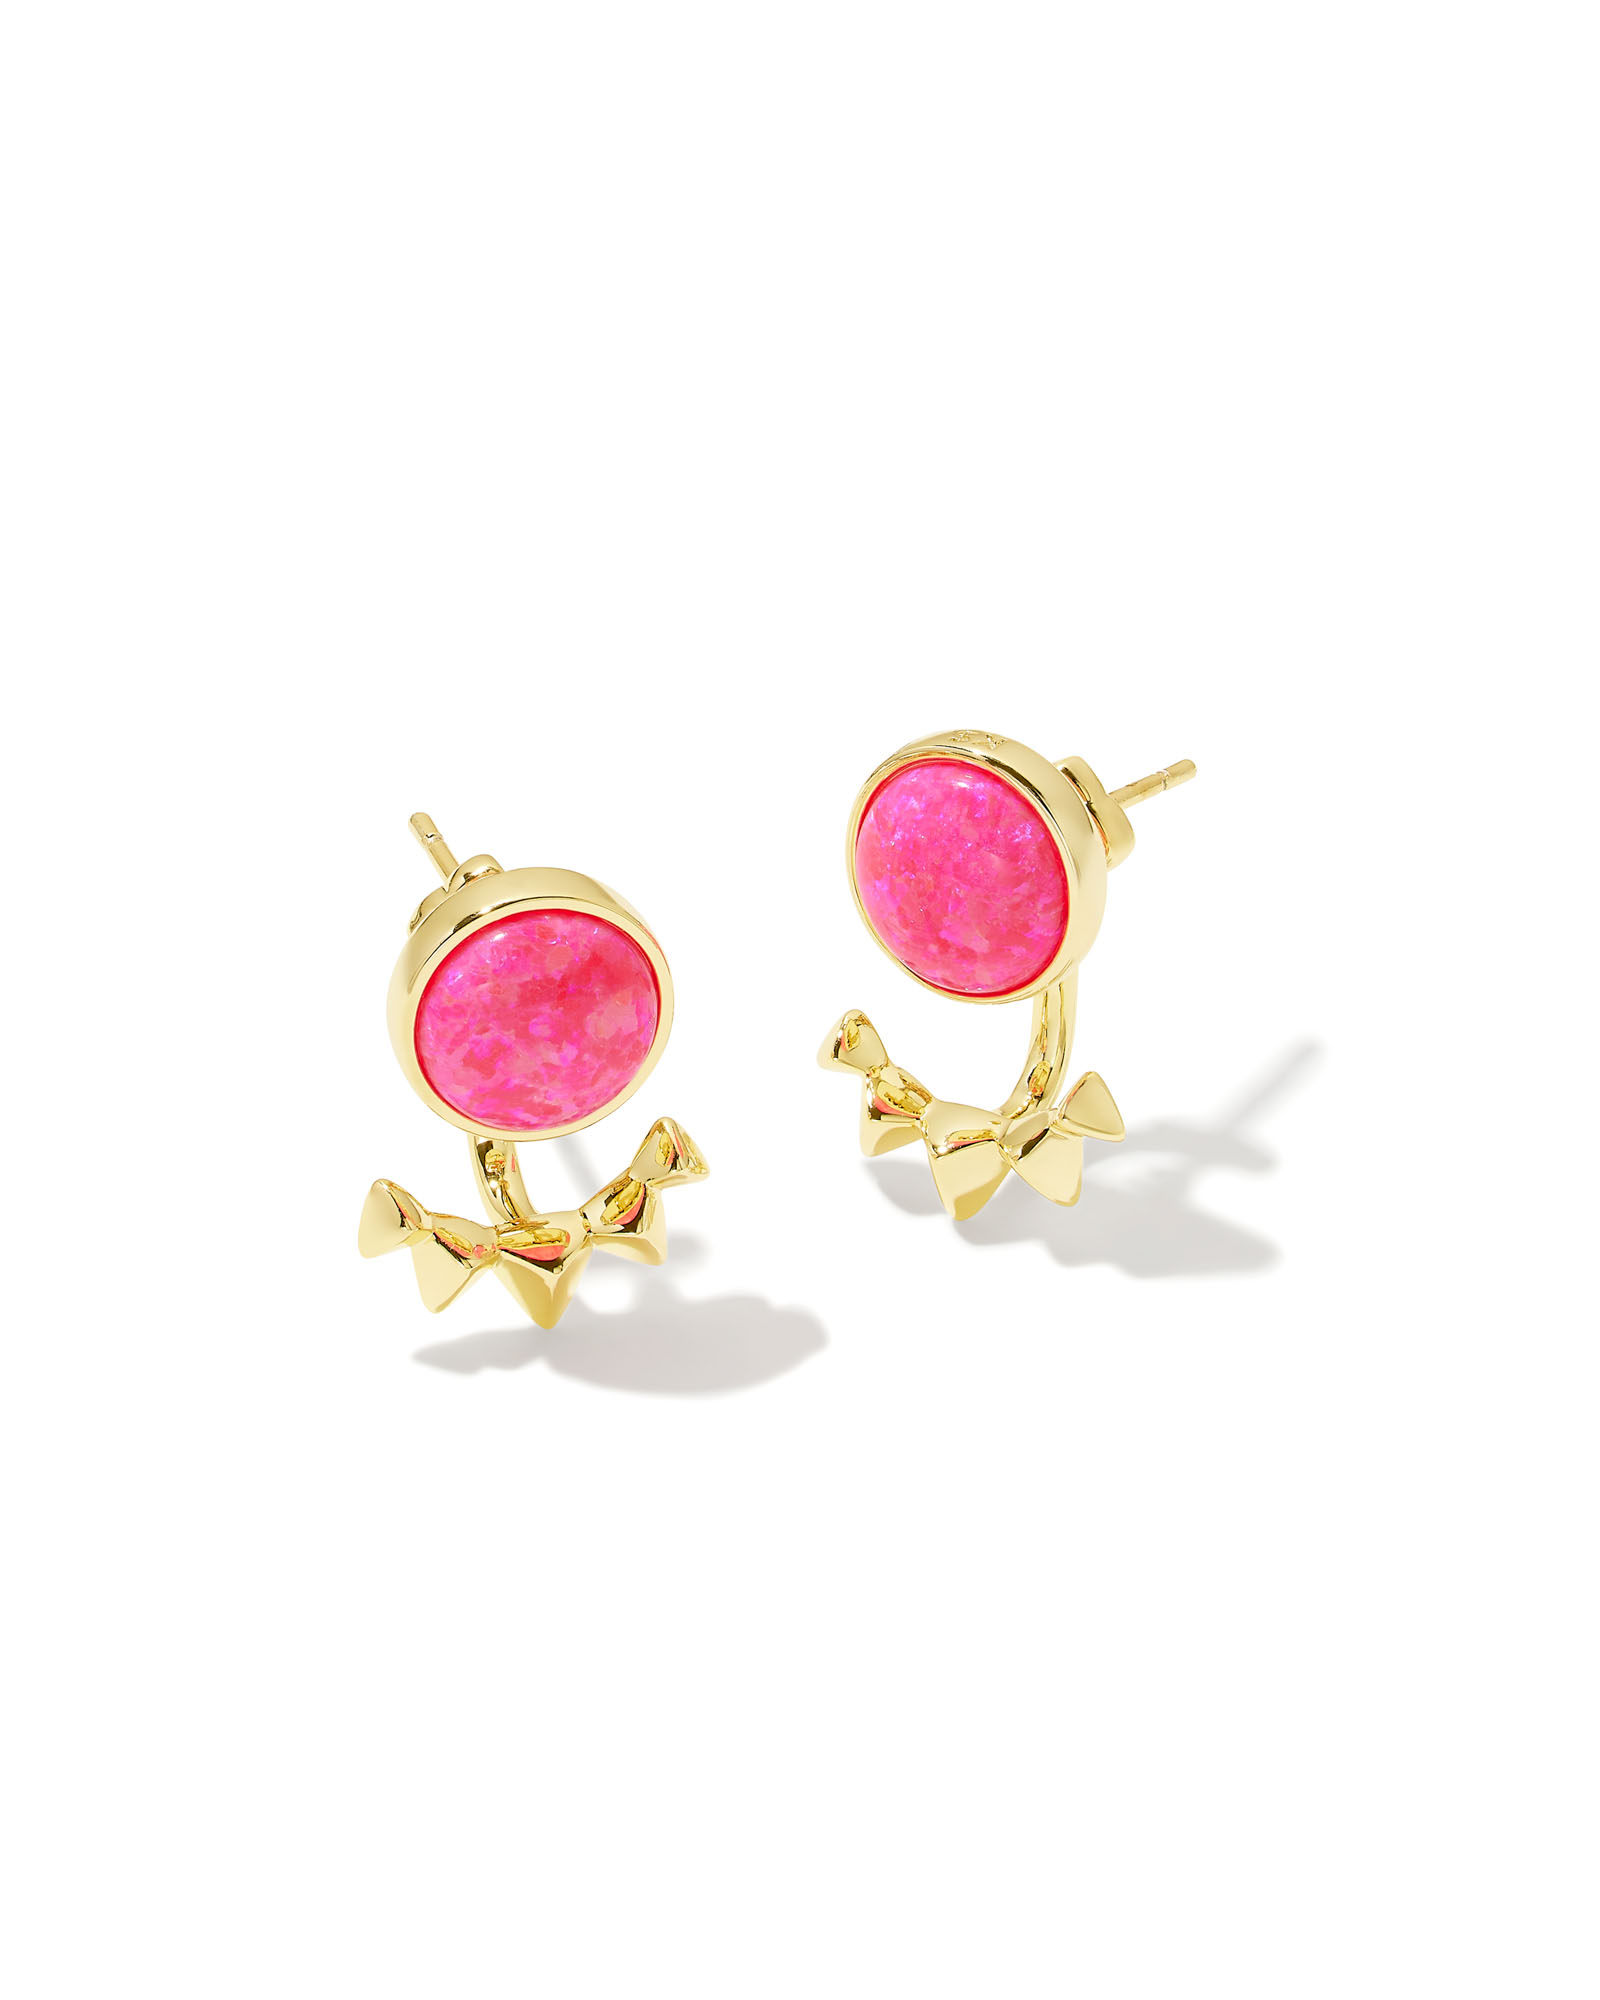 Sienna Gold Ear Jacket Earrings in Bright Pink Kyocera Opal | Kendra Scott